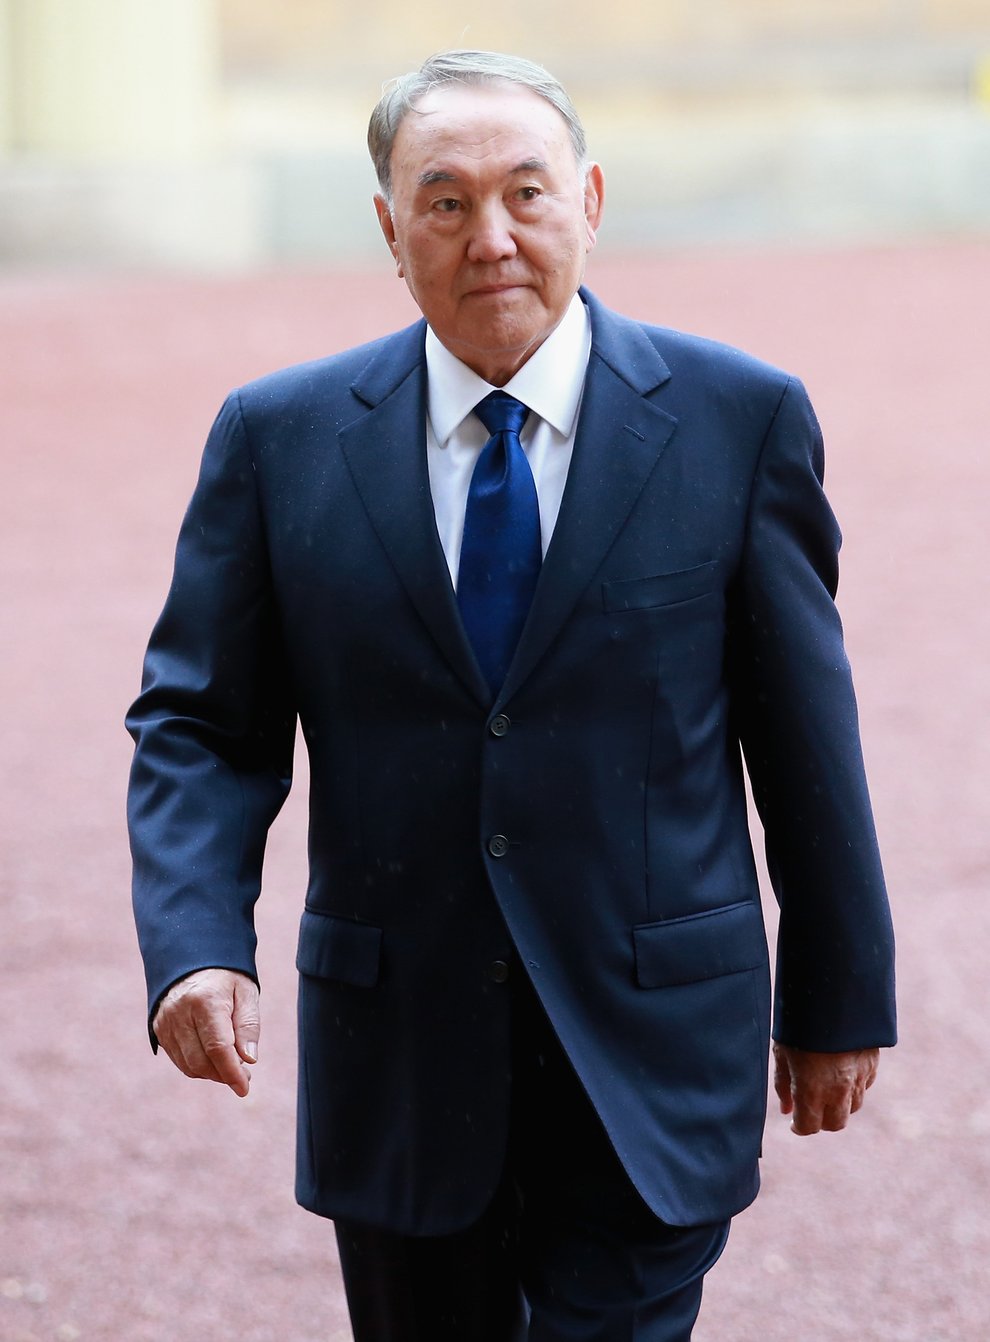 Nursultan Nazarbayev (Chris Jackson/PA)